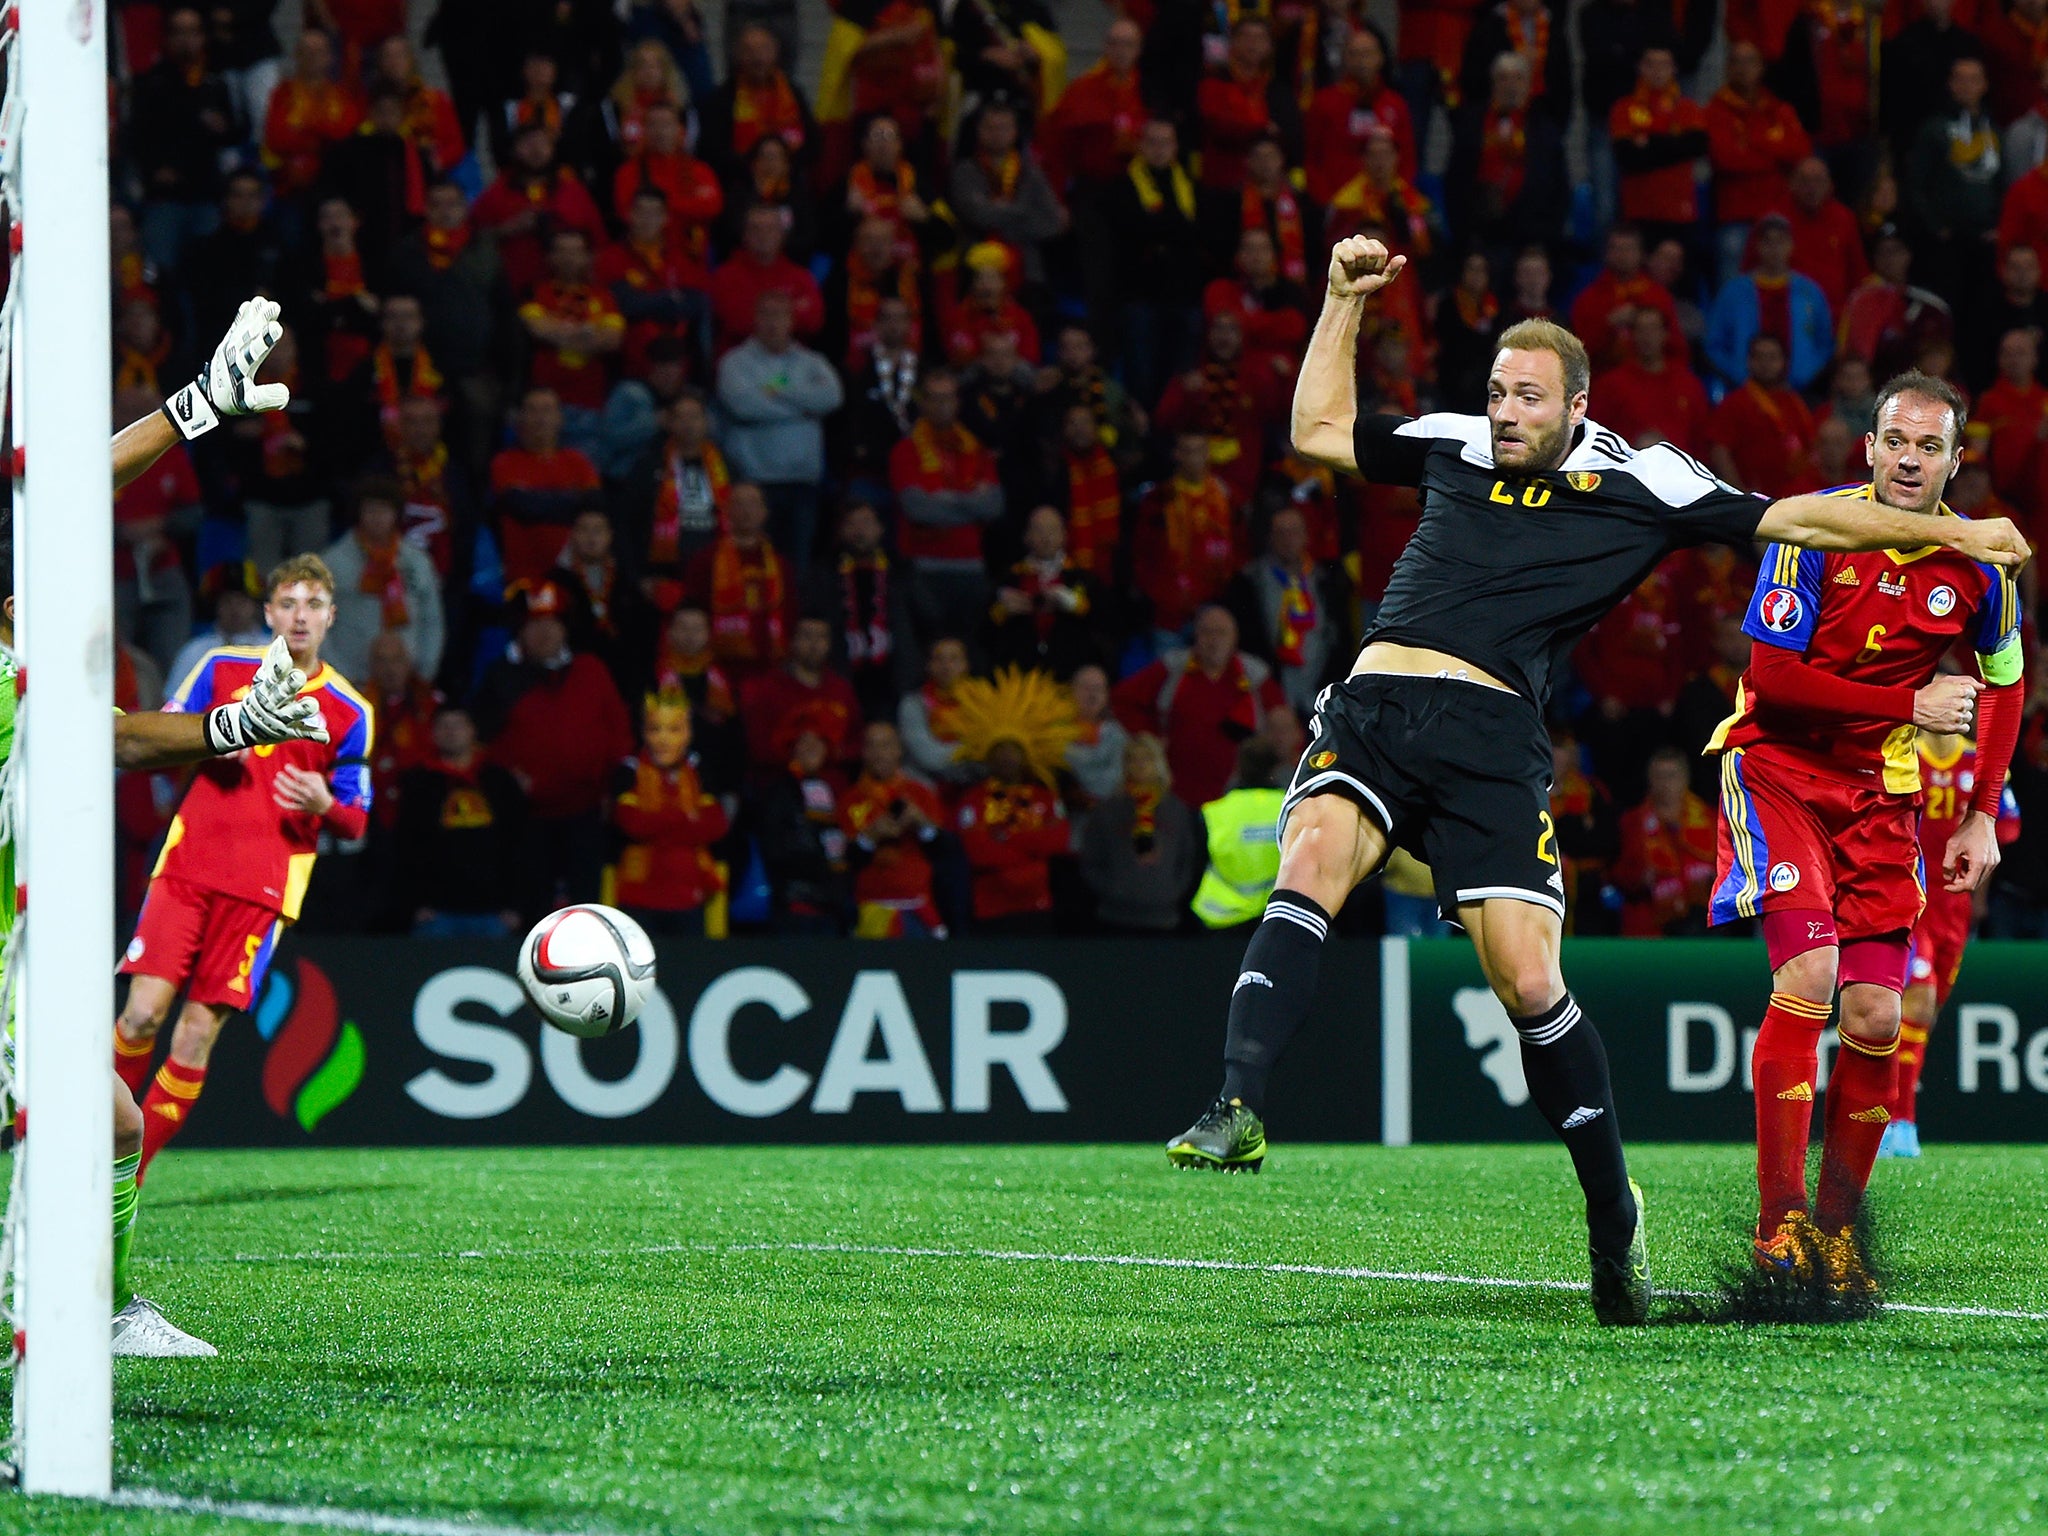 &#13;
Depoitre scores for Belgium against Andorra&#13;